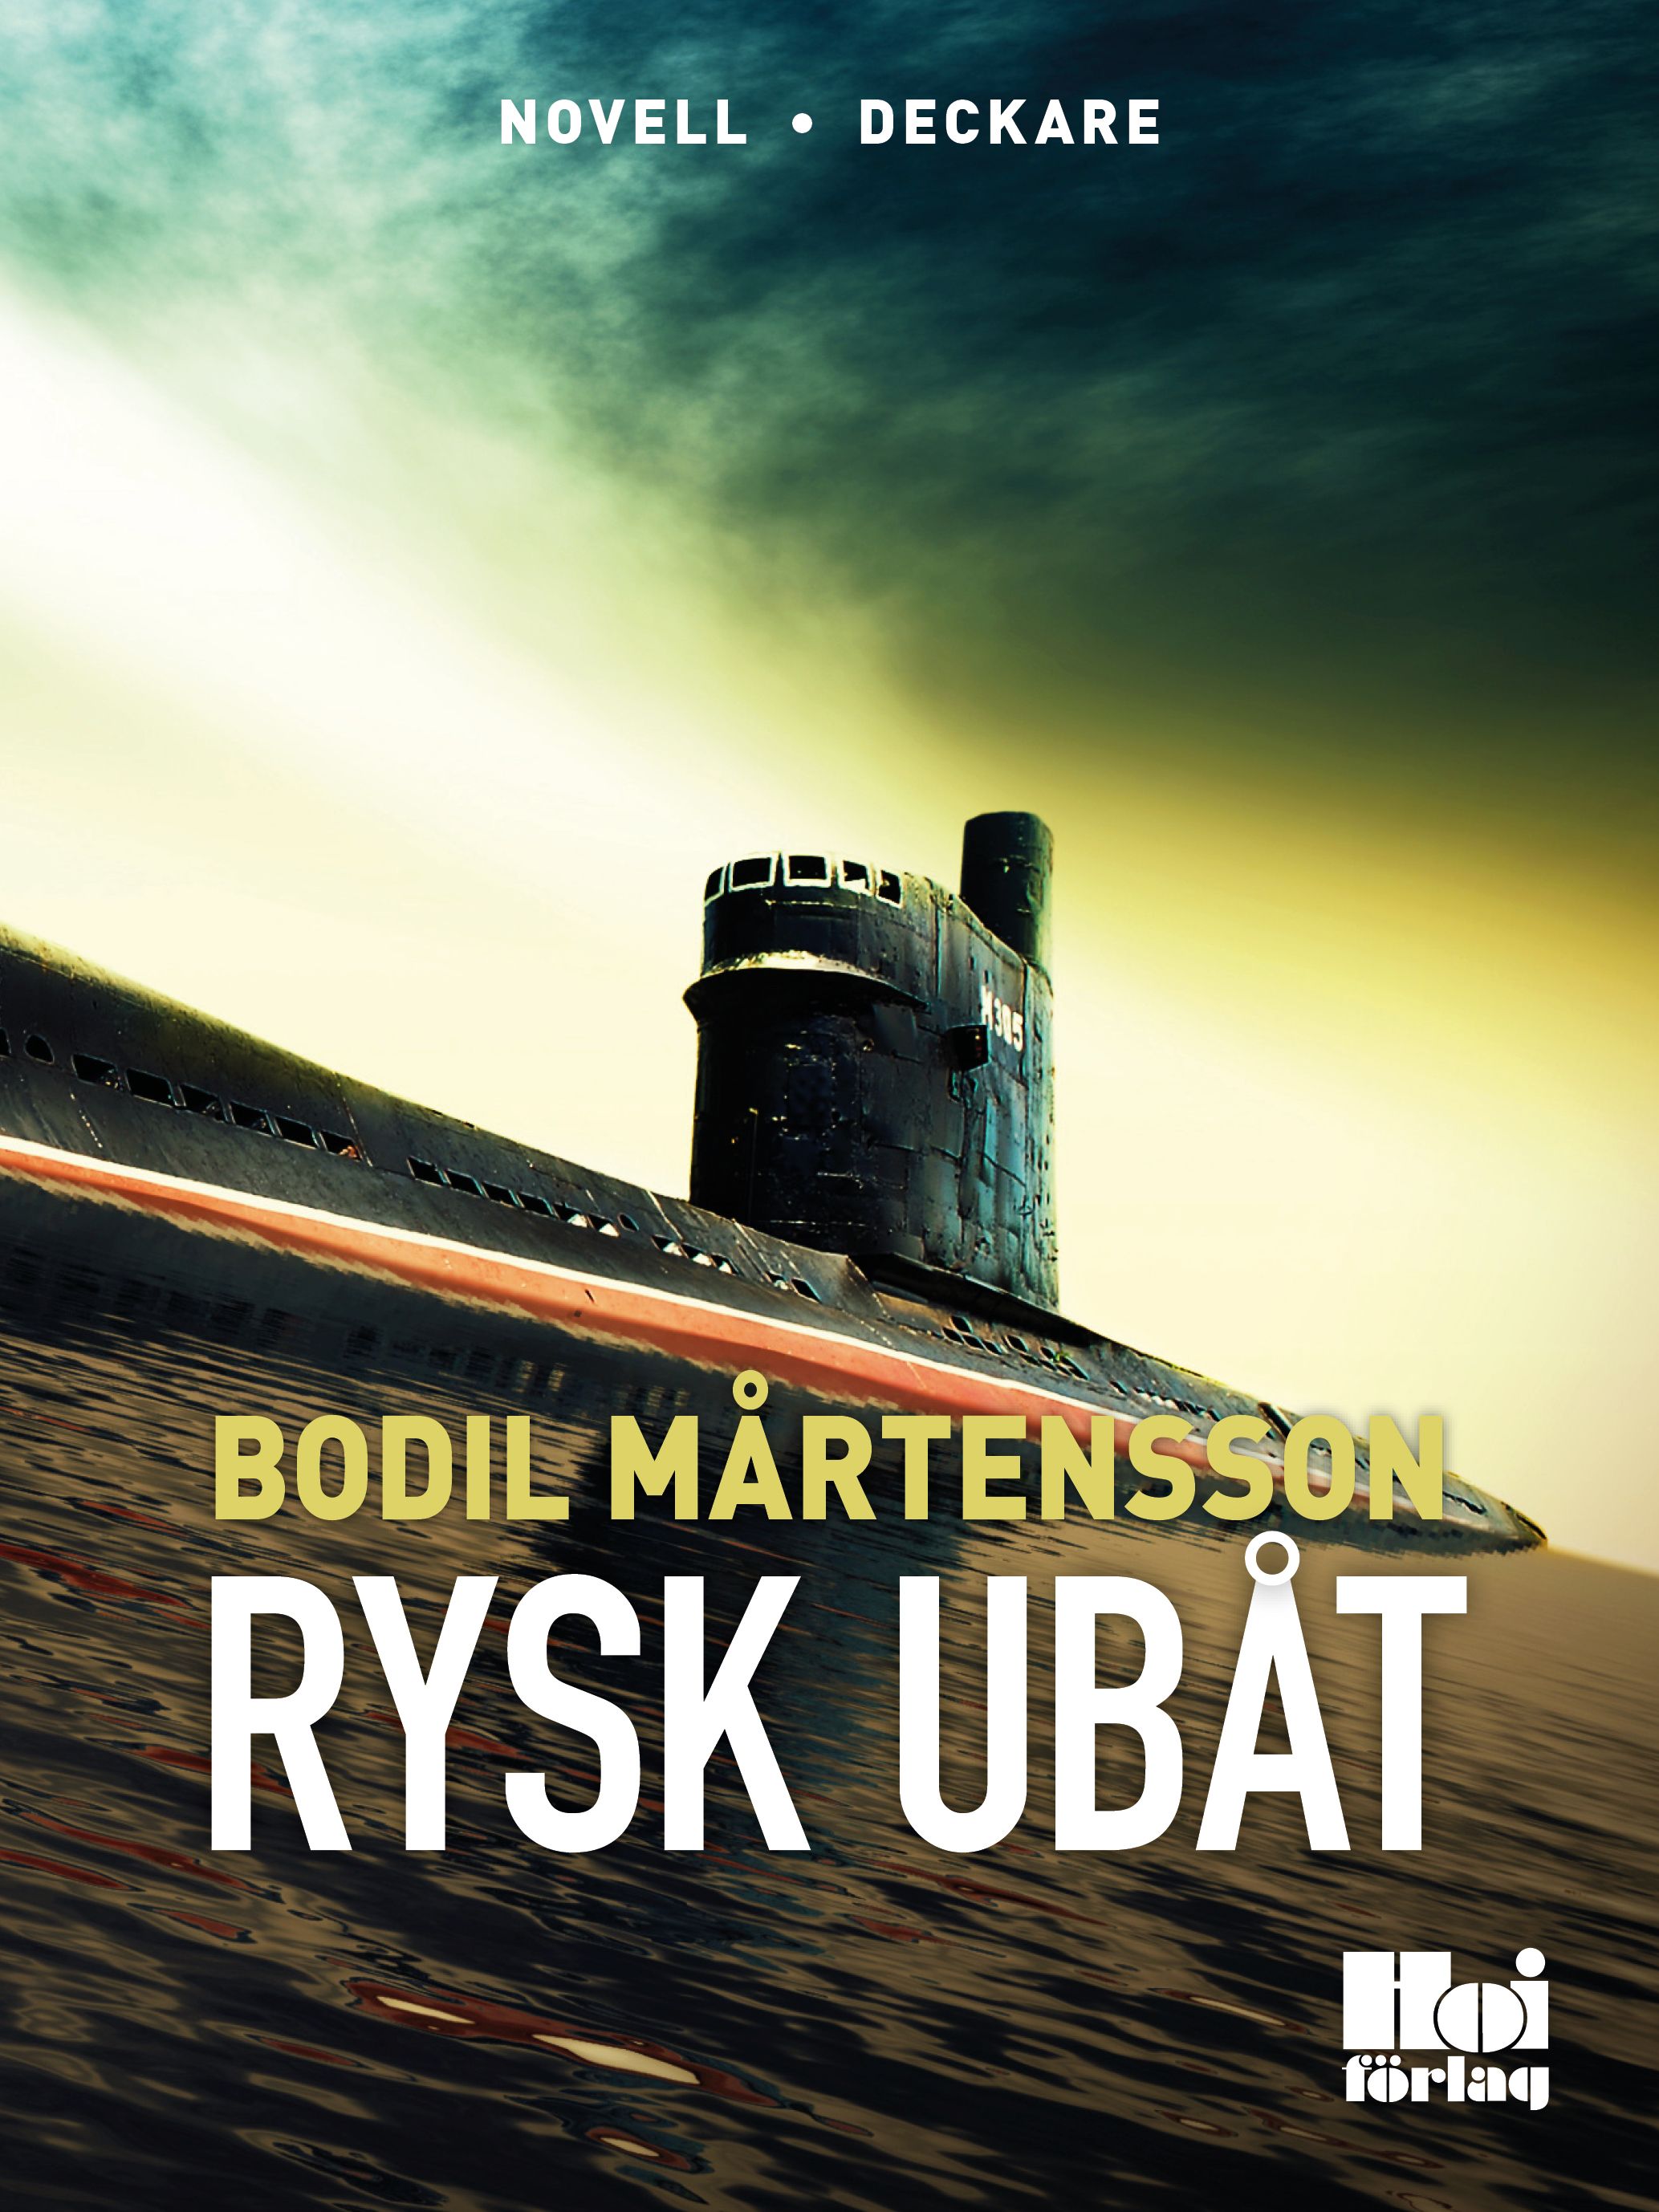 Rysk ubåt, e-bok av Bodil Mårtensson